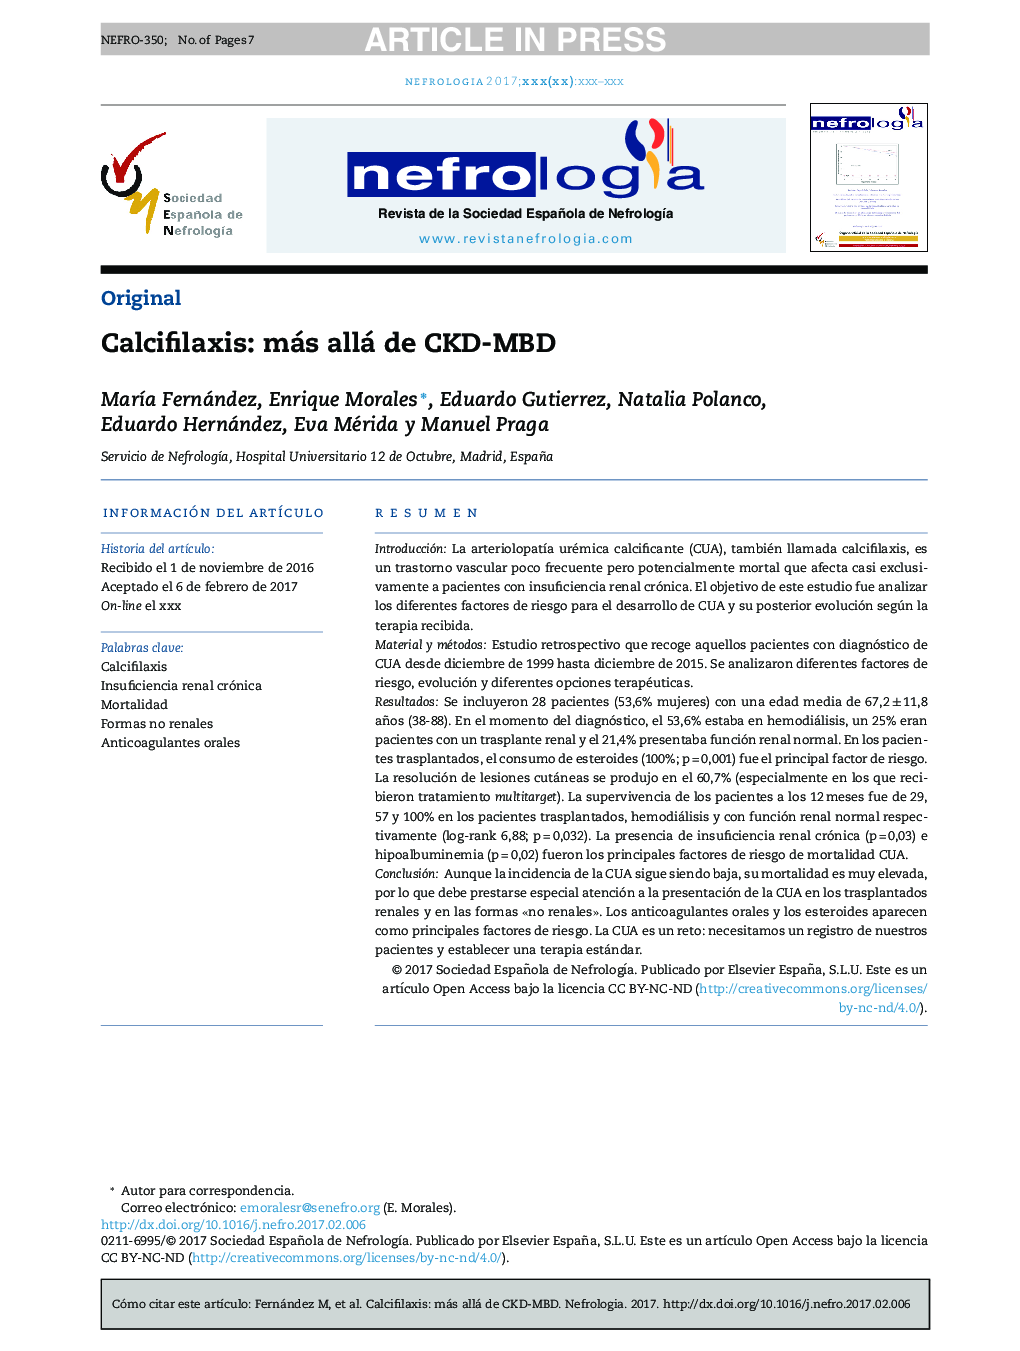 Calcifilaxis: más allá de CKD-MBD